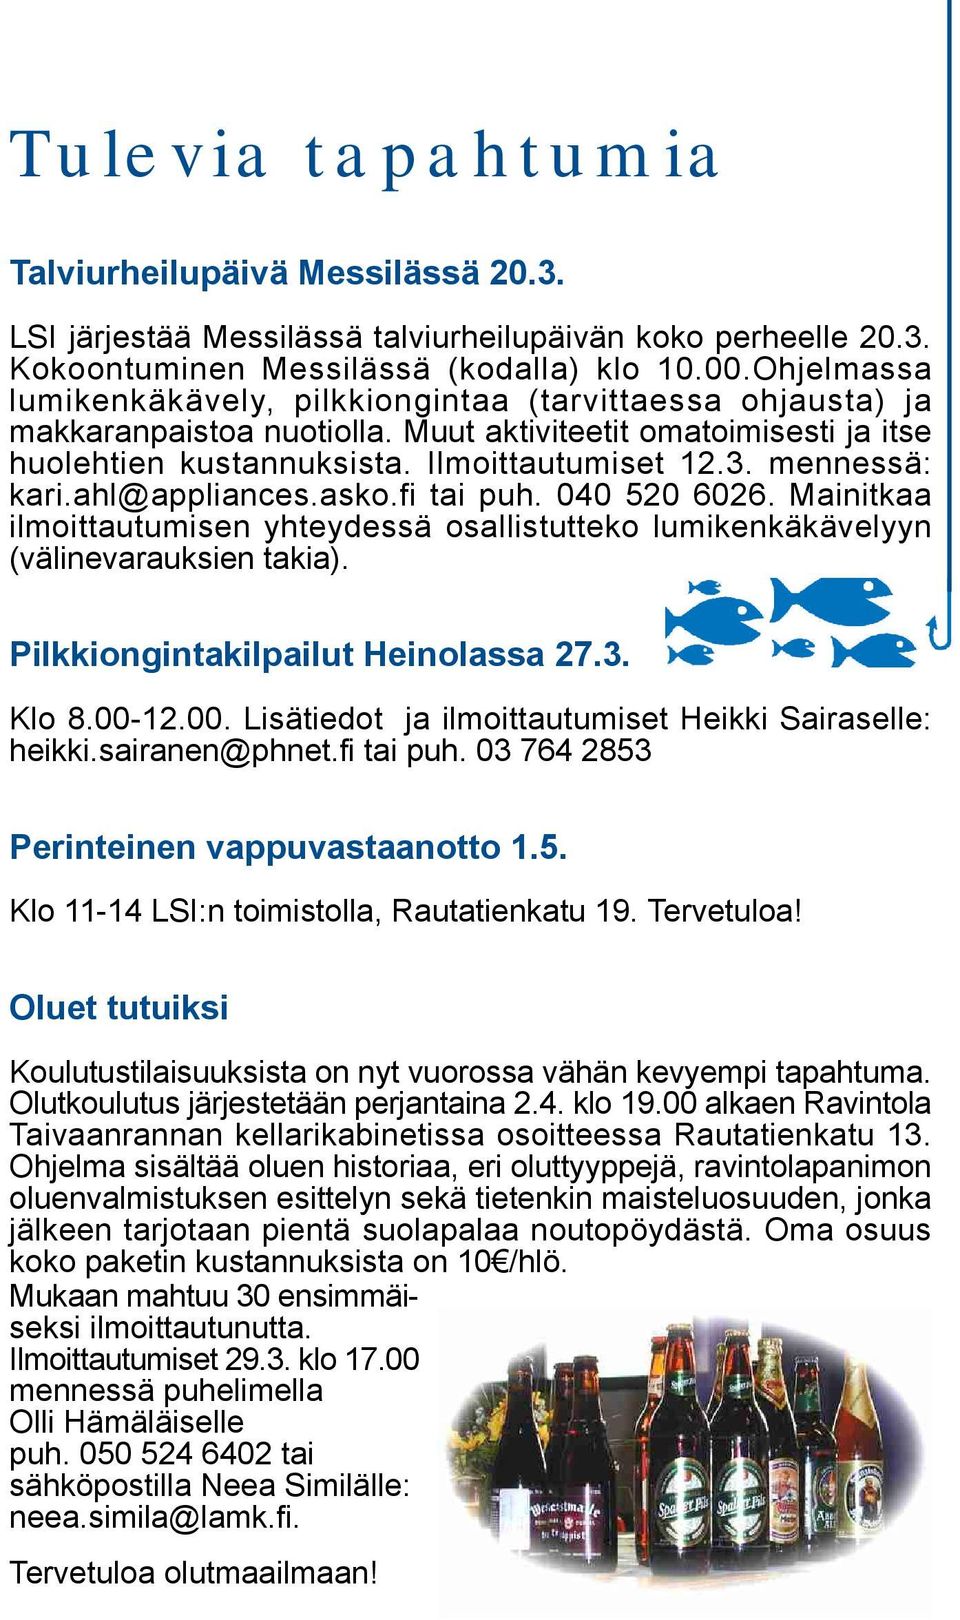 mennessä: kari.ahl@appliances.asko.fi tai puh. 040 520 6026. Mainitkaa ilmoittautumisen yhteydessä osallistutteko lumikenkäkävelyyn (välinevarauksien takia). Pilkkiongintakilpailut Heinolassa 27.3.